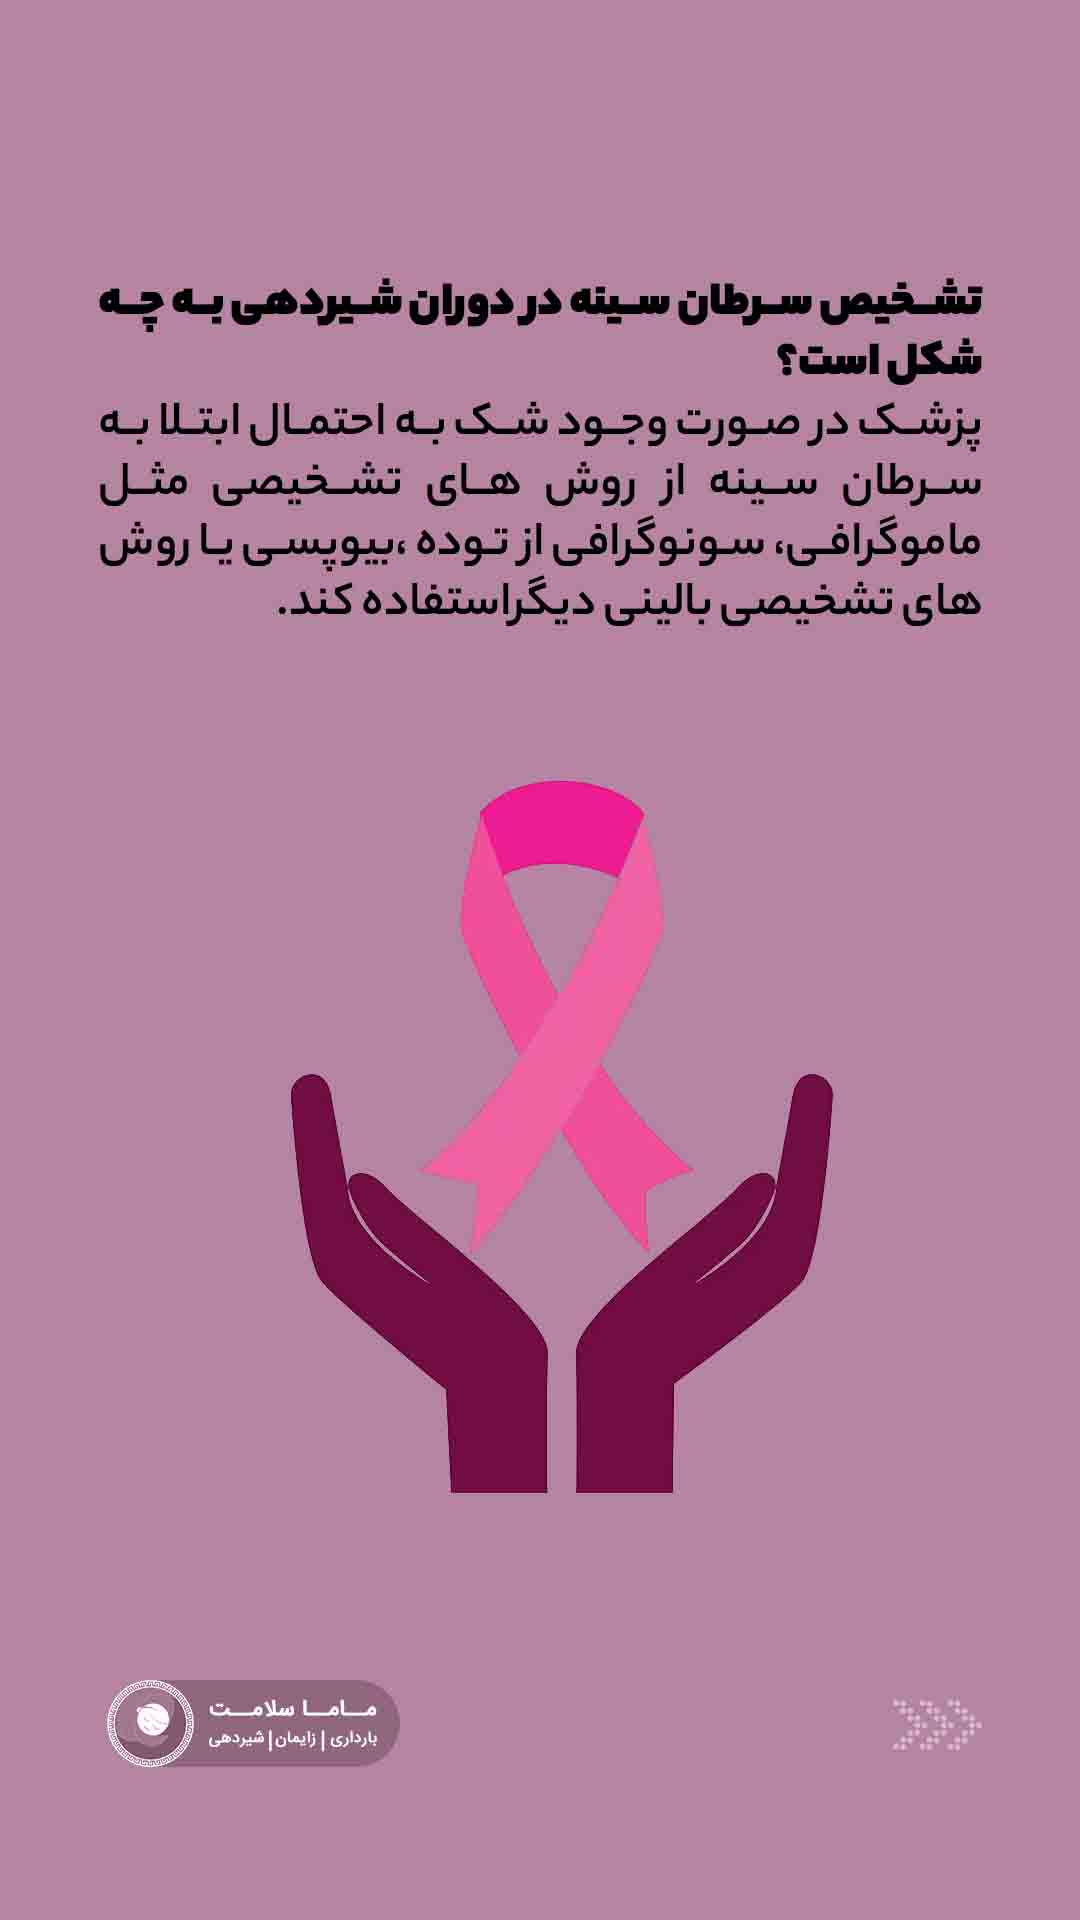 سرطان سینه در دوران شیردهی نماد سرطان سینه زنان